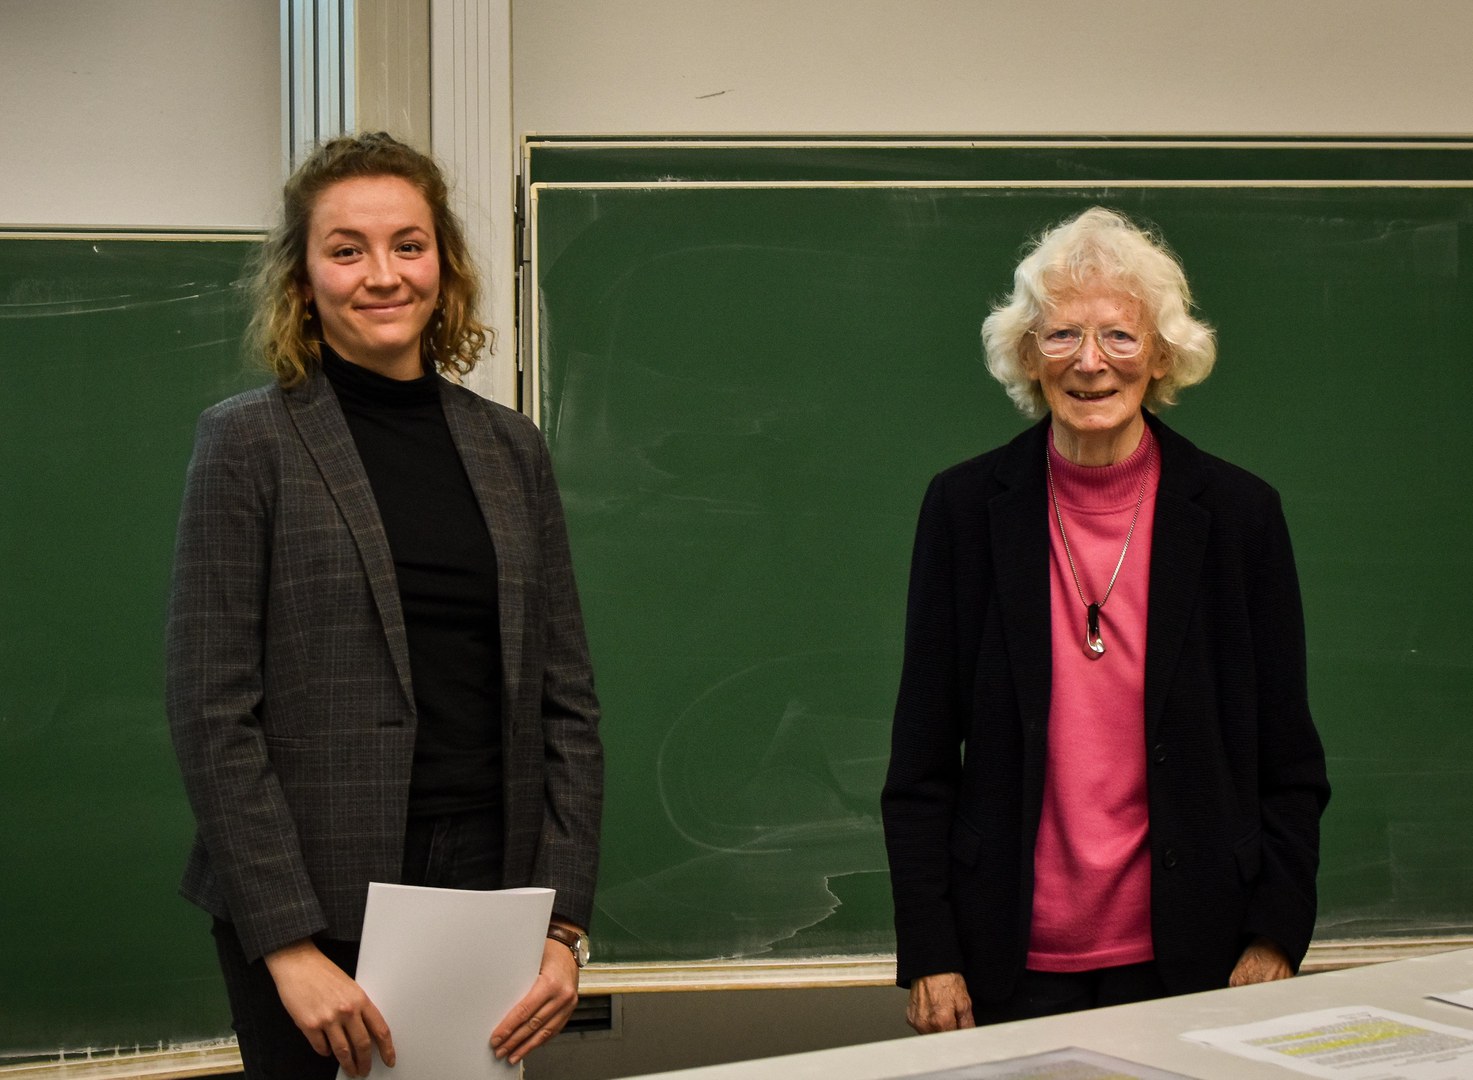 Urkundenübergabe durch die Stifterin Frau Professorin Peyerimhoff an die Preisträgerin Christina Braun